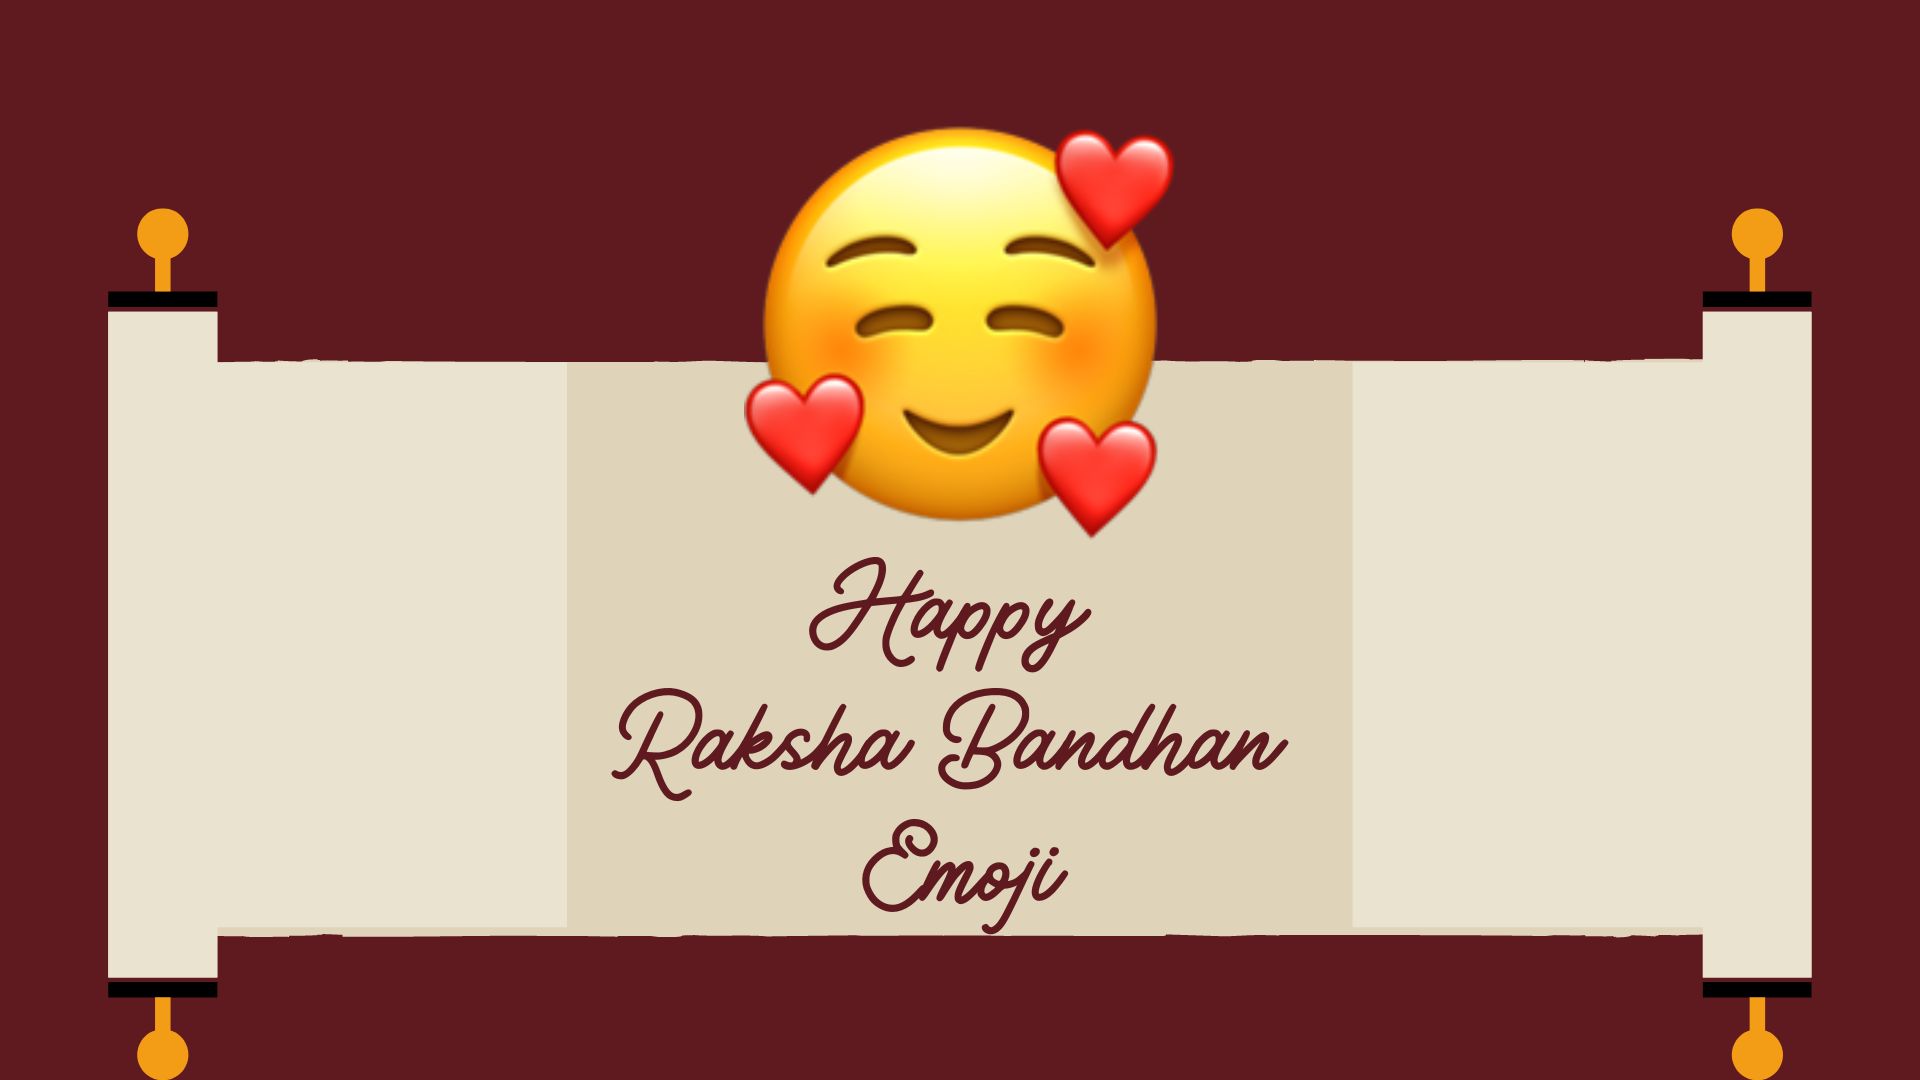 Happy Raksha Bandhan emoji